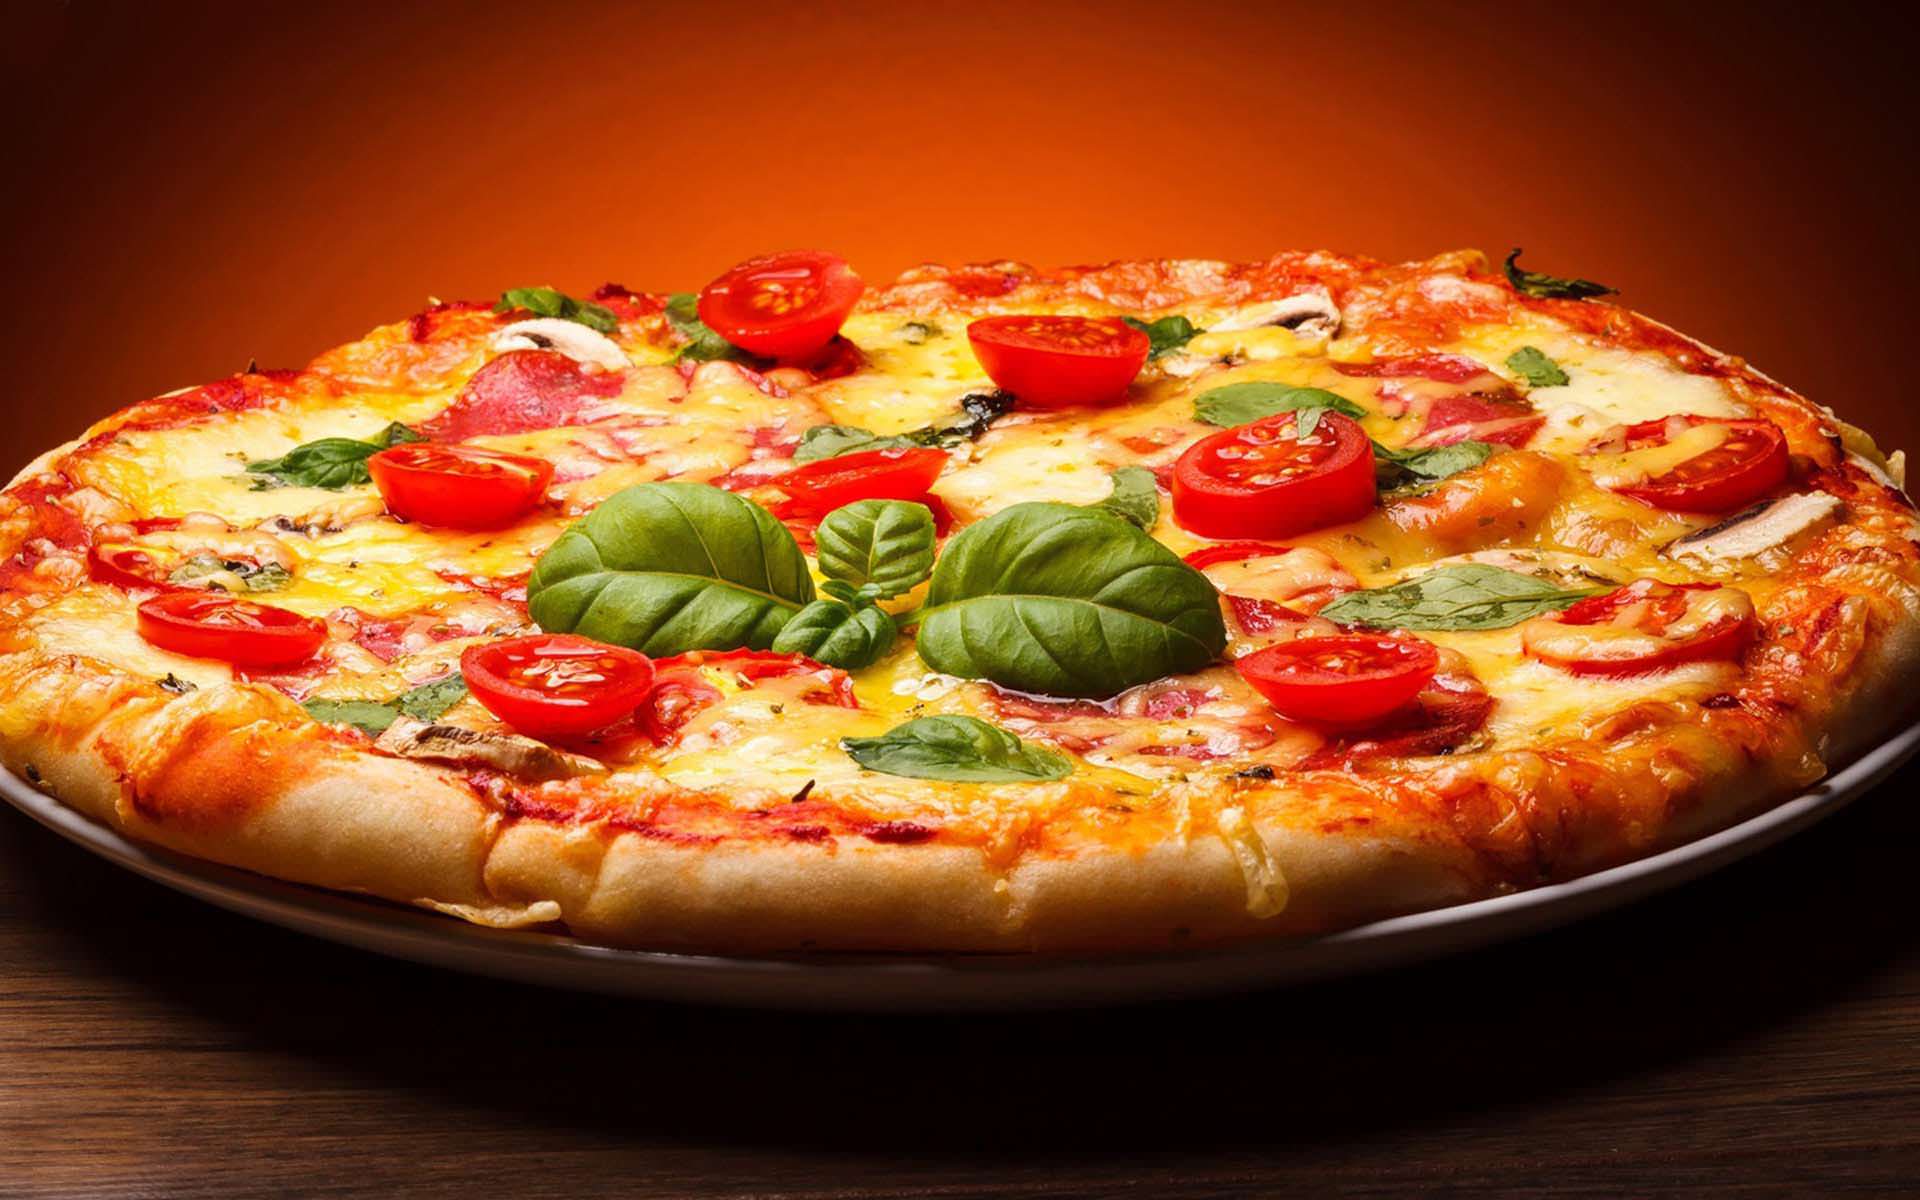 Hình Nền Bánh Pizza đơn Giản Cho Người Sành ăn  Nền PSD Tải xuống miễn phí   Pikbest